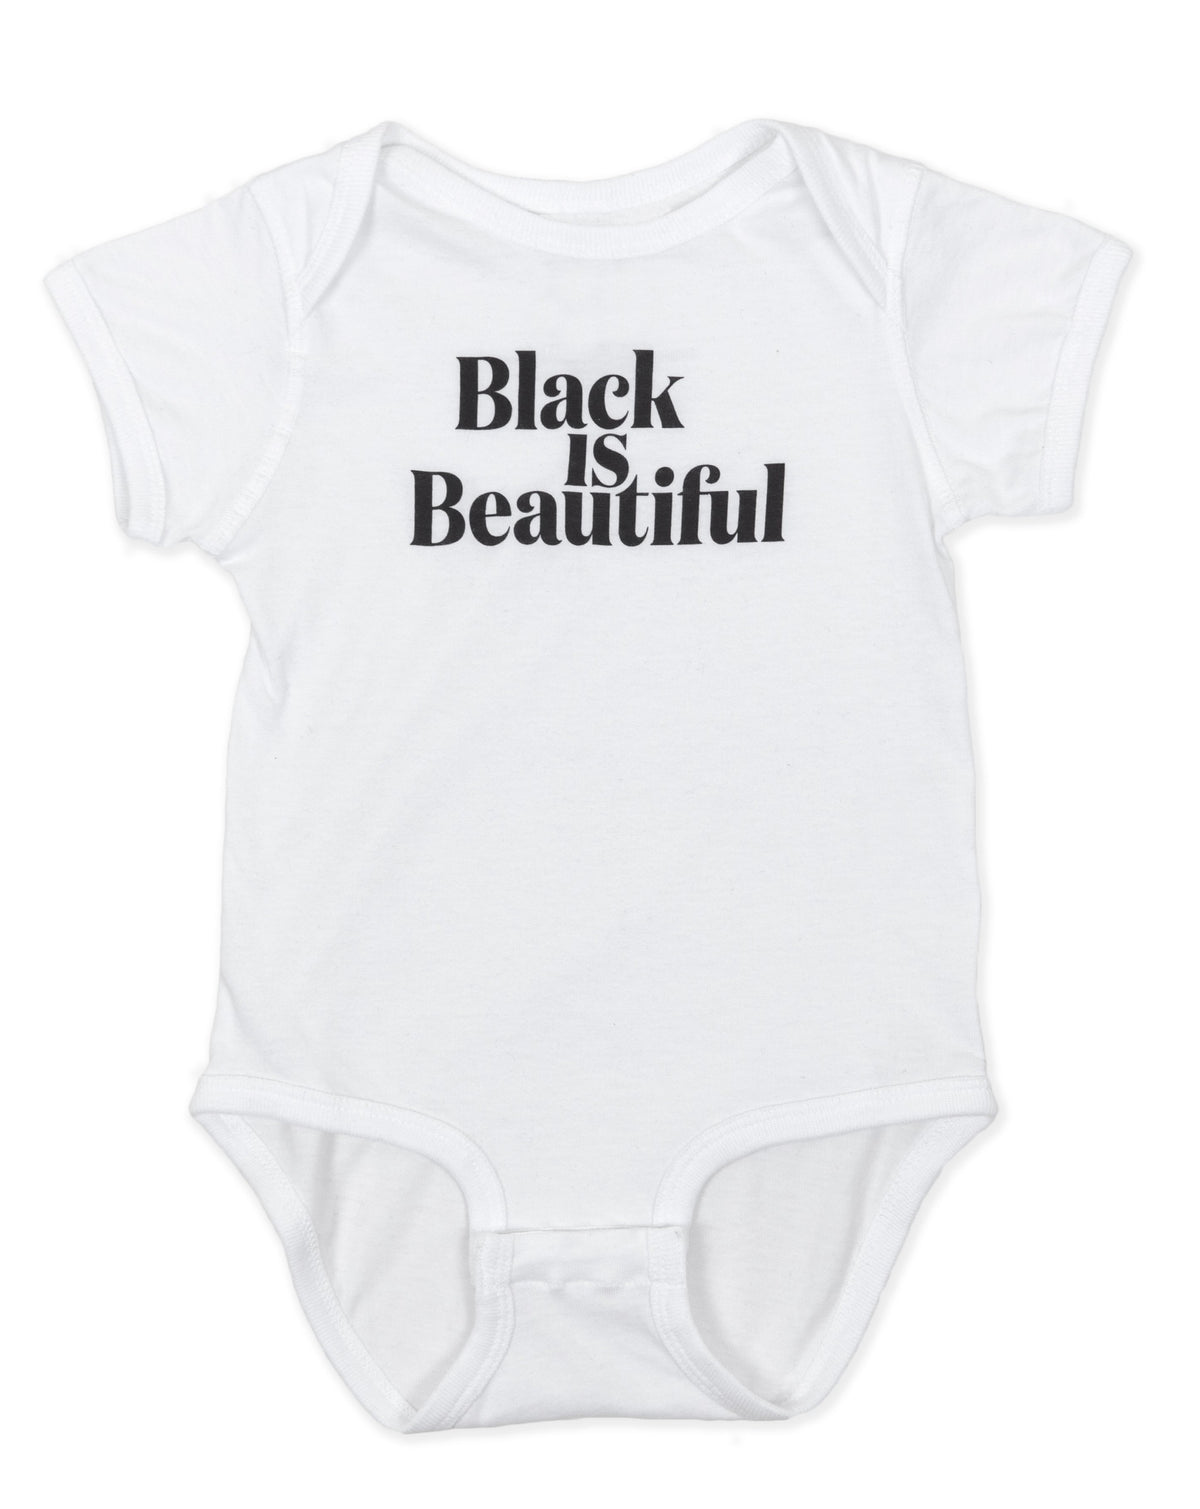 Black is Beautiful Infant Onesie